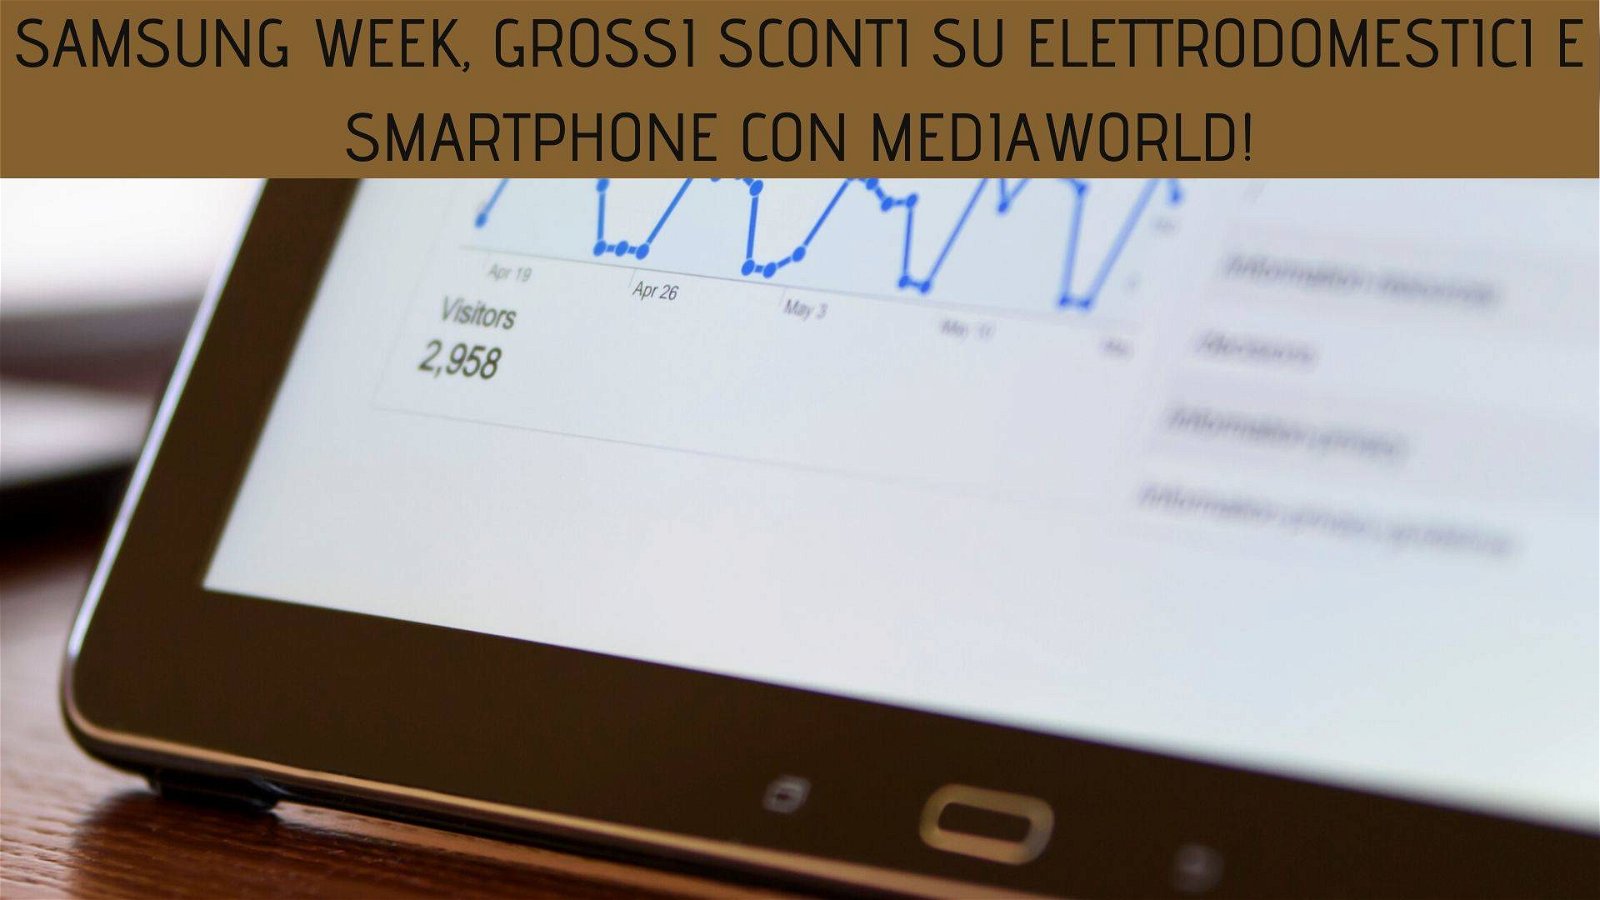 Immagine di Samsung Week, grossi sconti su elettrodomestici e smartphone con MediaWorld!